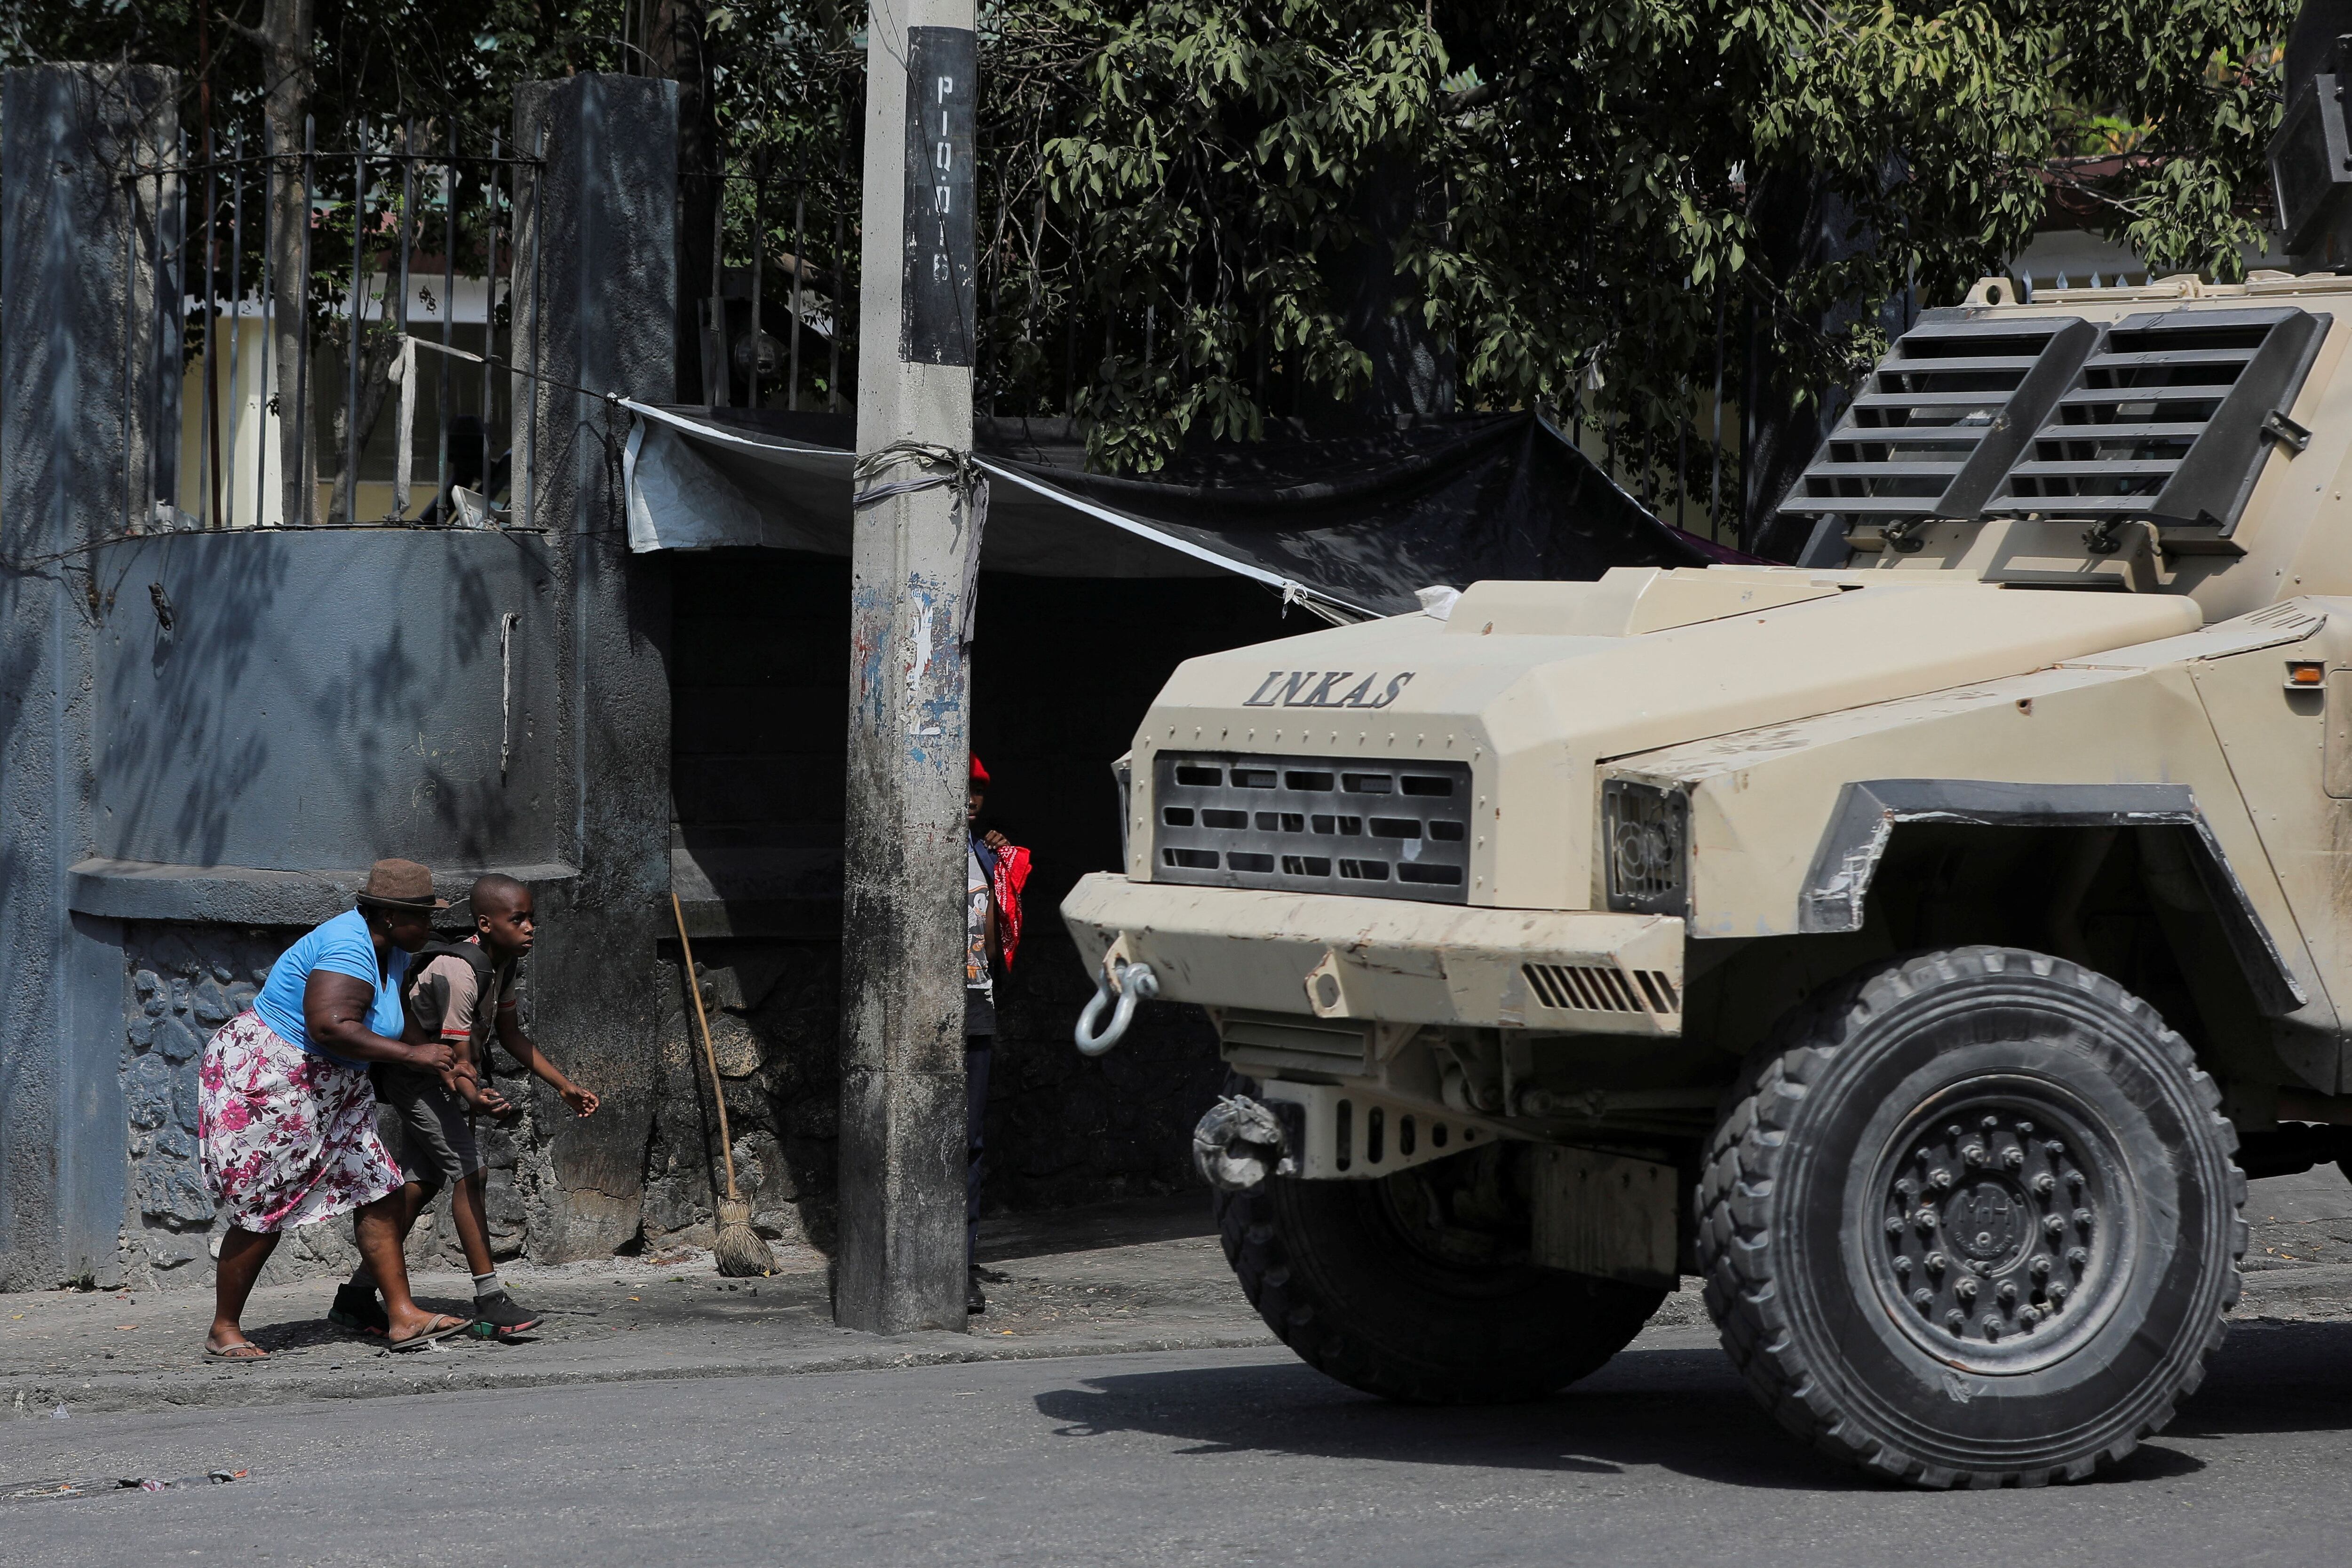 Una mujer y un niño se agachan cerca de un vehículo policial en Puerto Príncipe (REUTERS/Ralph Tedy Erol)